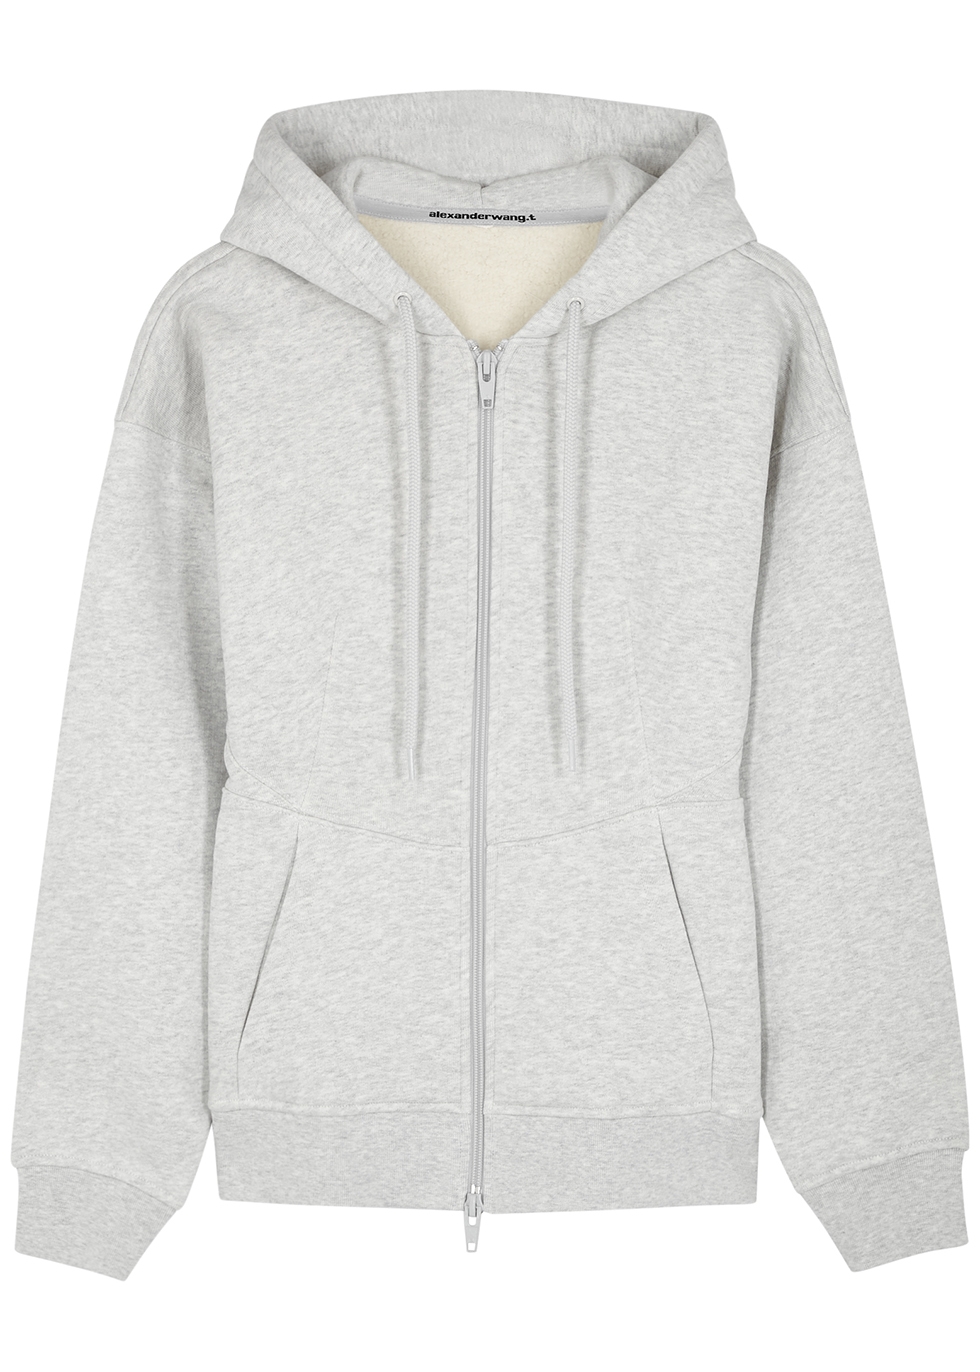 alexander wang hoodie grey